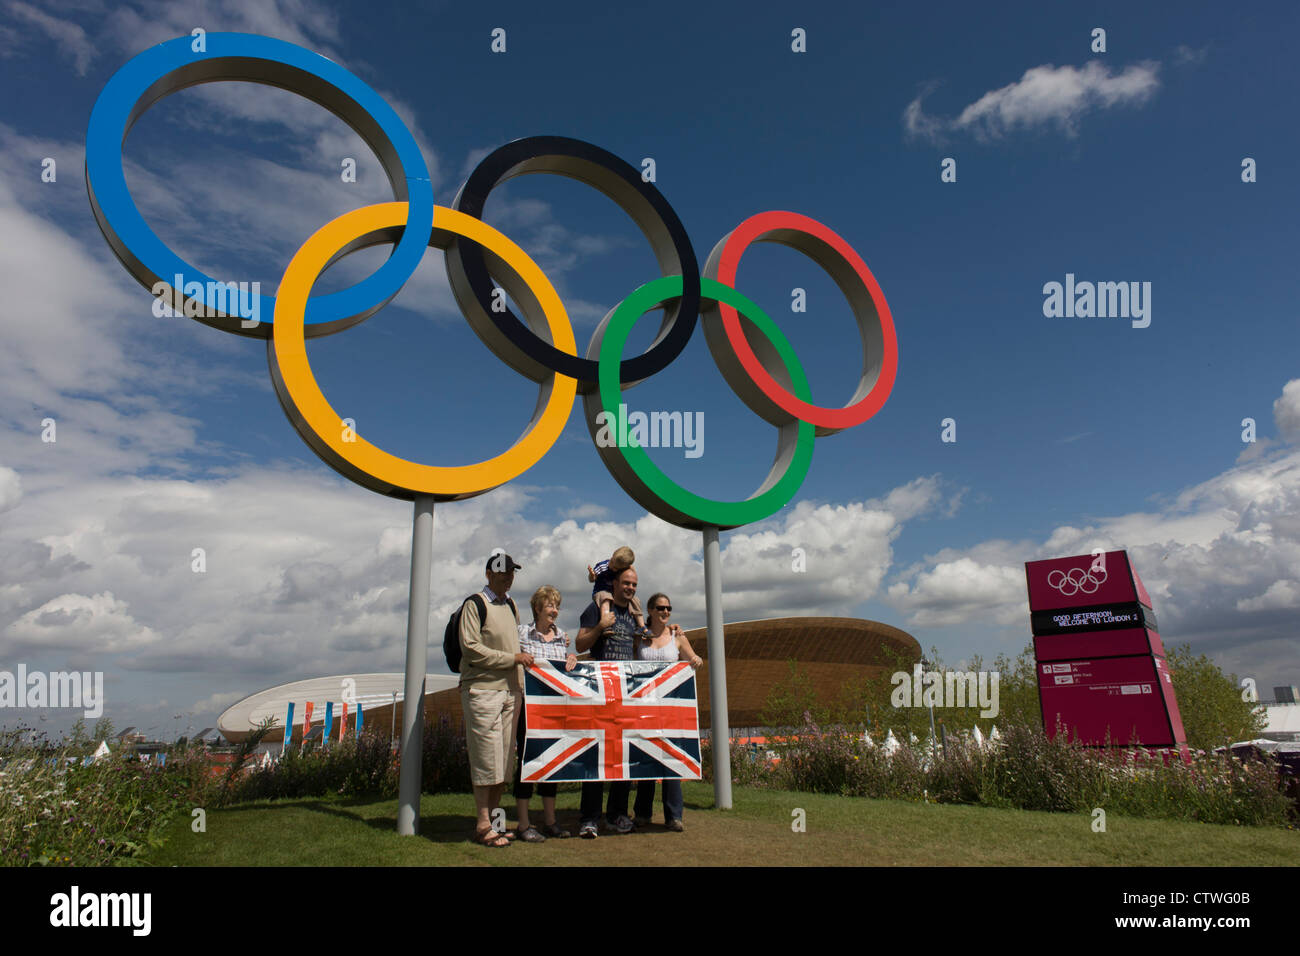 Toile de fond pour photographie de sport olympique, anneaux